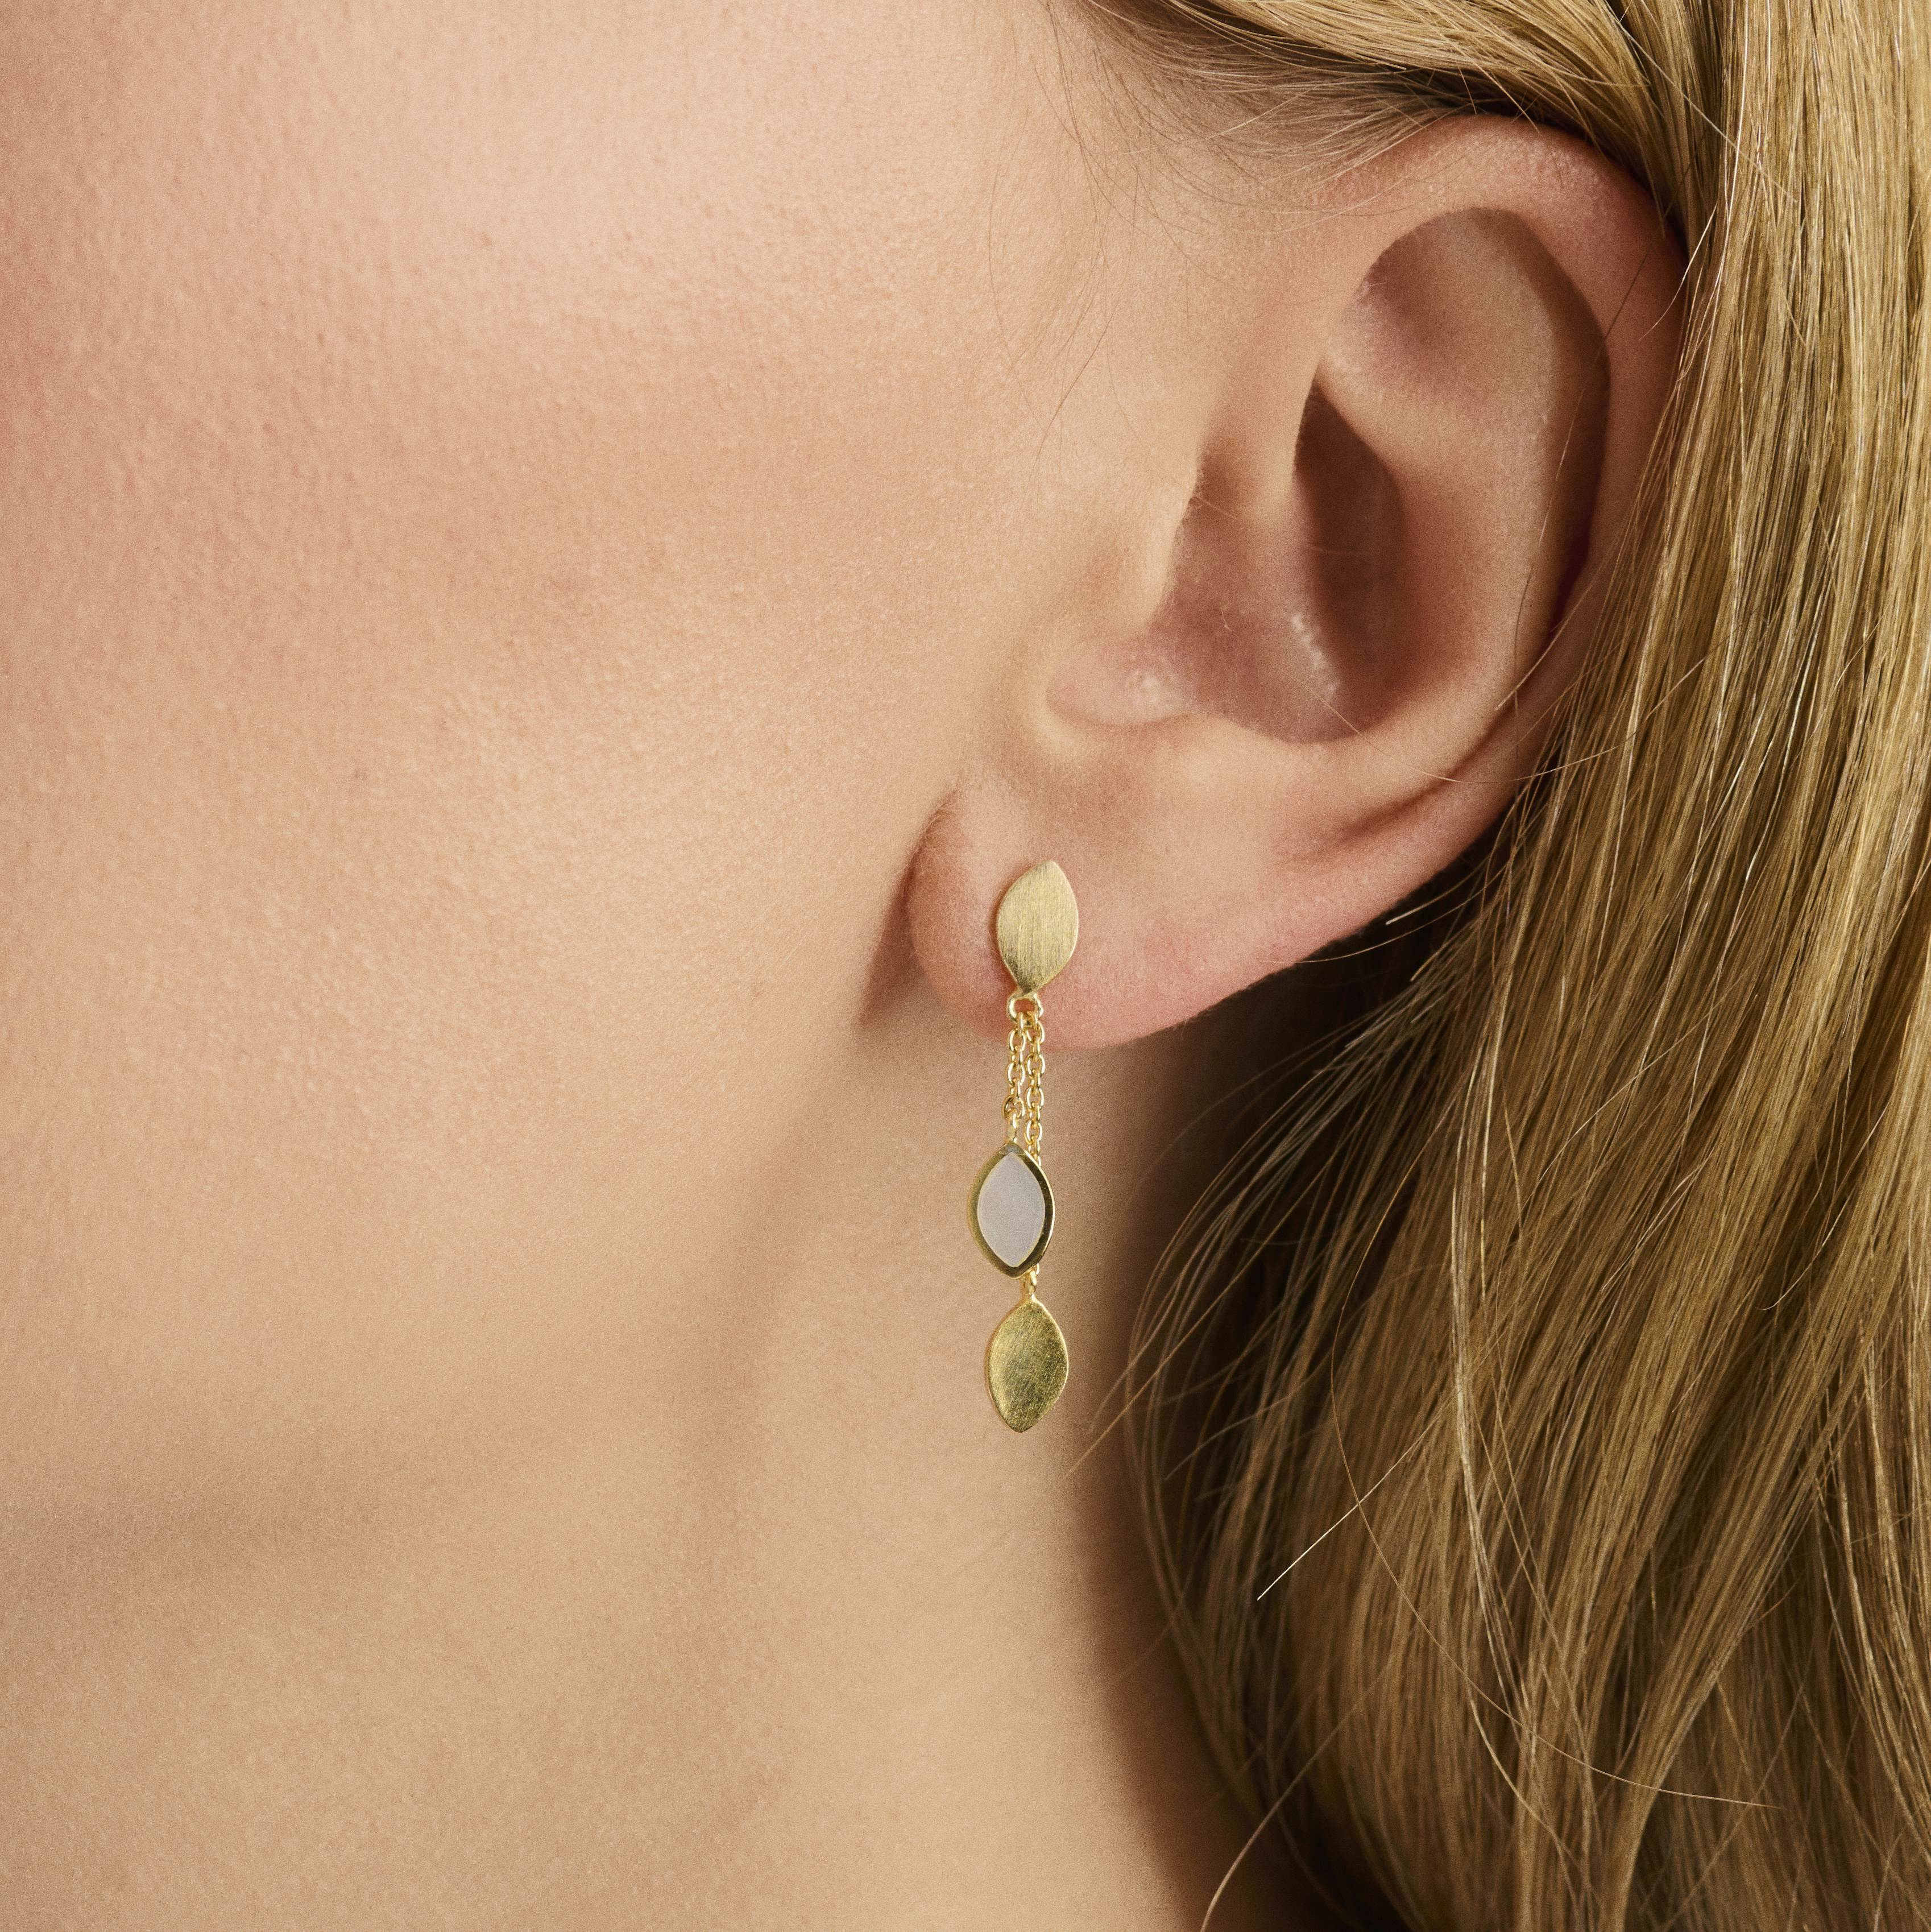 Flake Earrings von Pernille Corydon in Vergoldet-Silber Sterling 925